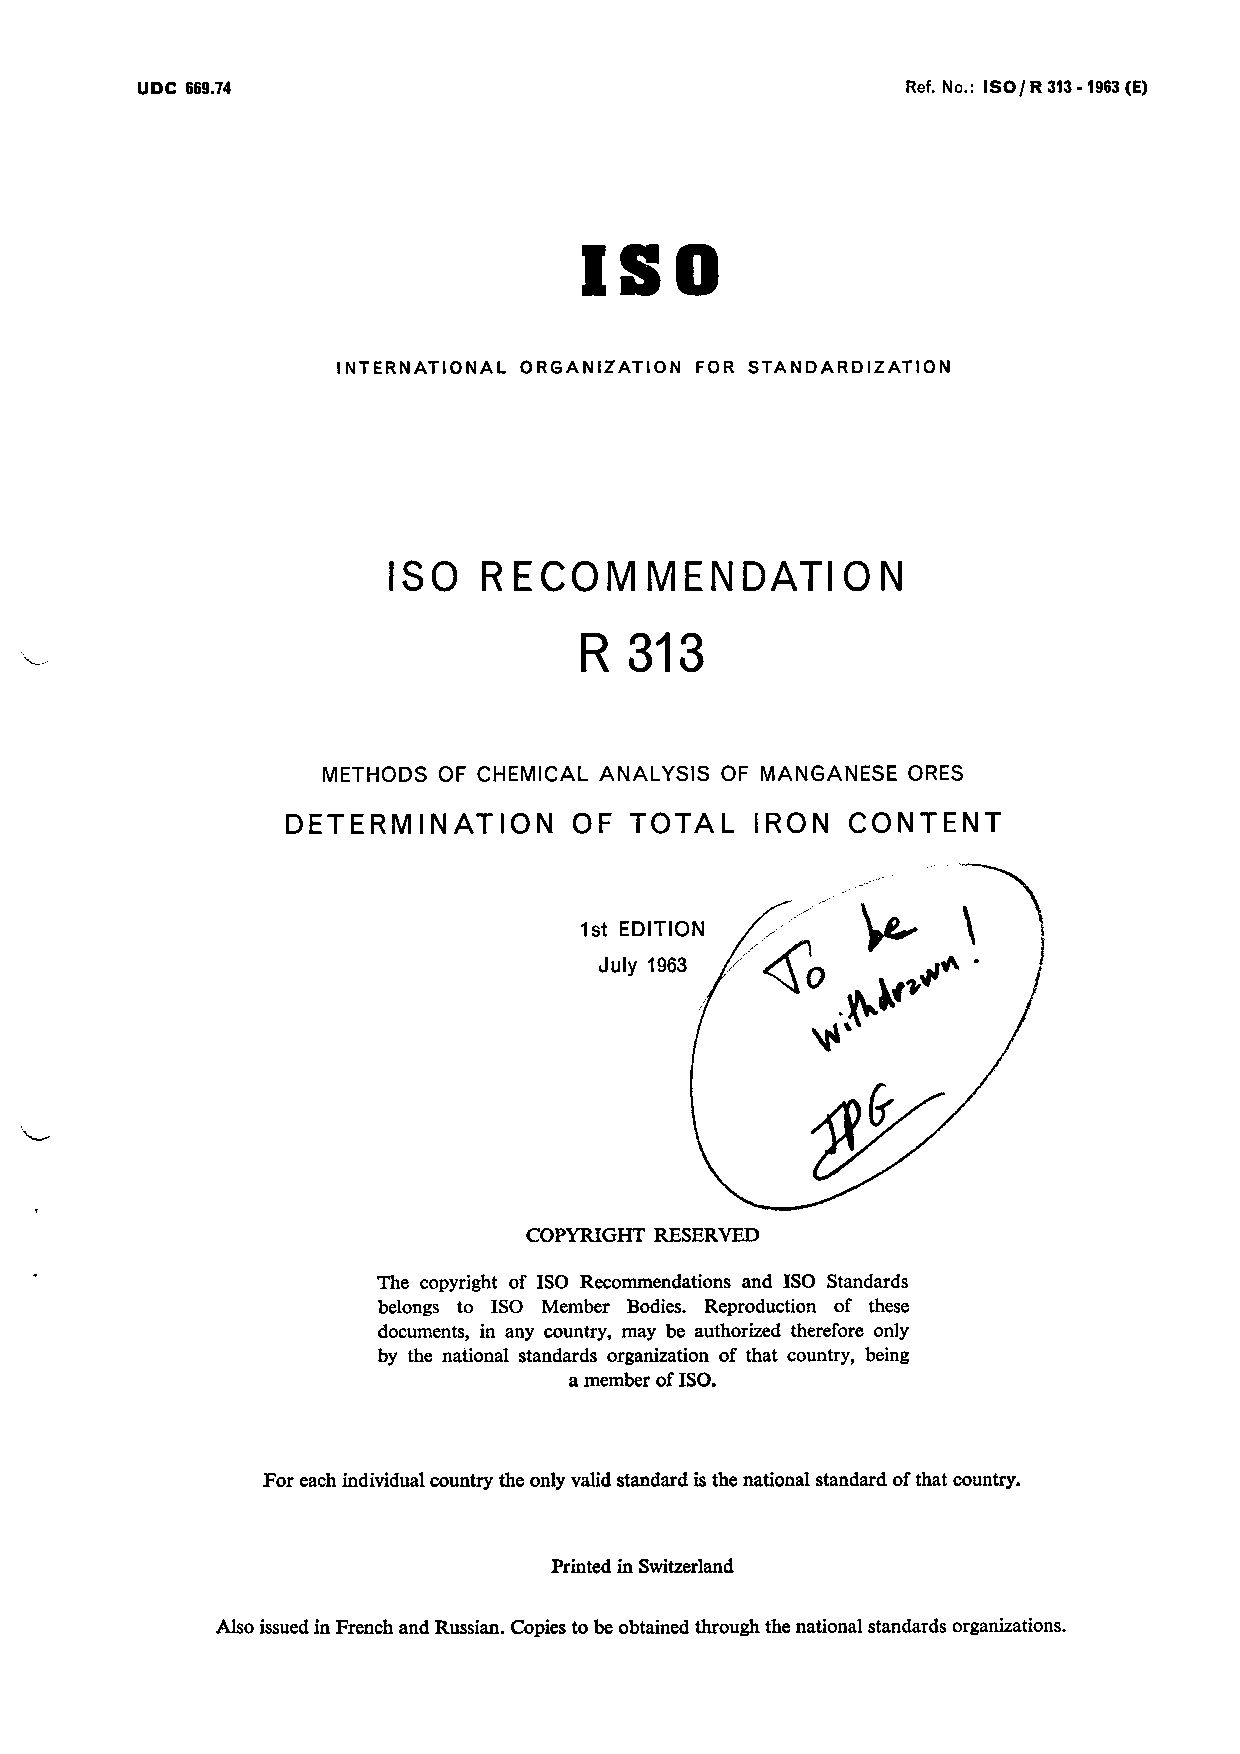 ISO/R 313-1963